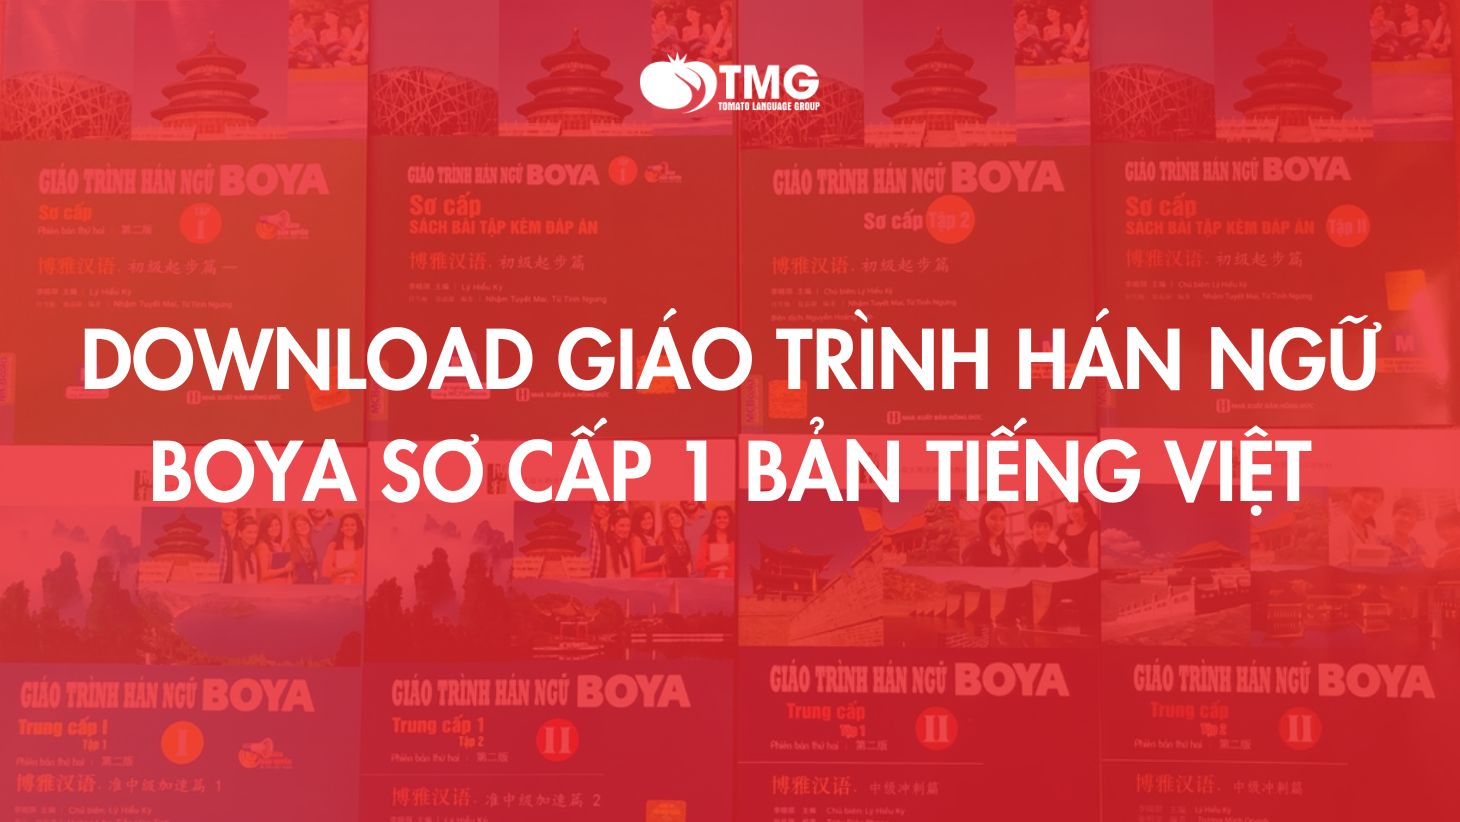 Download giáo trình Hán ngữ Boya sơ cấp 1 bản tiếng Việt MIỄN PHÍ